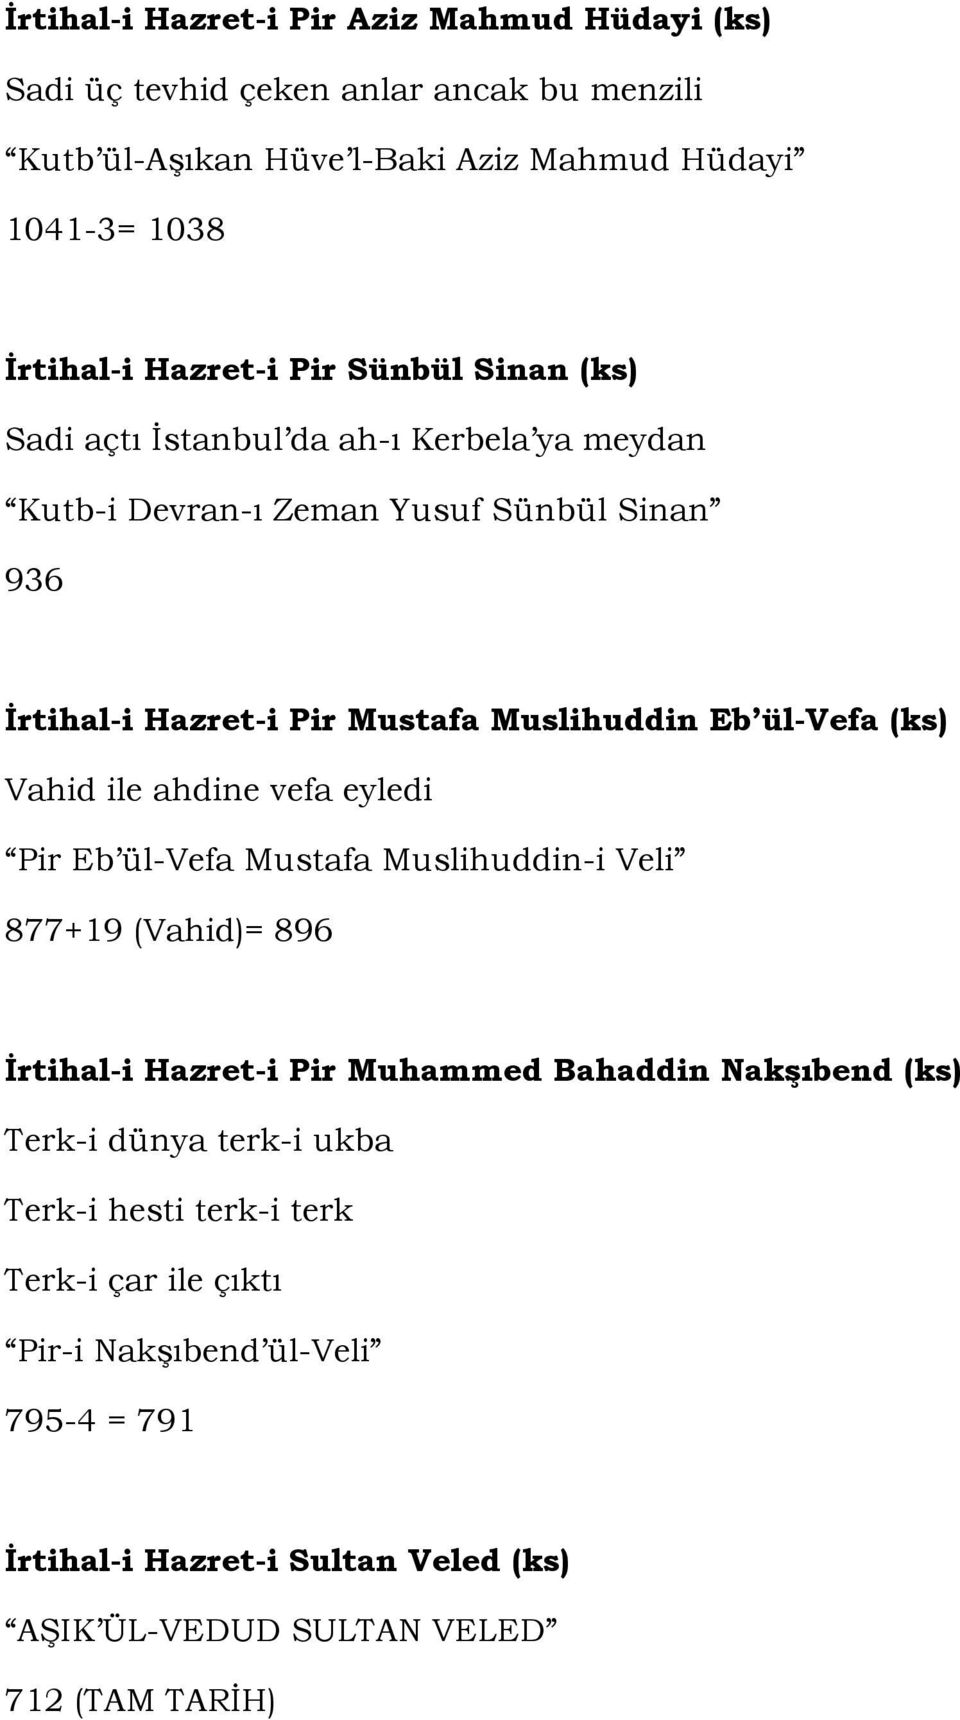 (ks) Vahid ile ahdine vefa eyledi Pir Eb ül-vefa Mustafa Muslihuddin-i Veli 877+19 (Vahid)= 896 İrtihal-i Hazret-i Pir Muhammed Bahaddin Nakşıbend (ks) Terk-i dünya